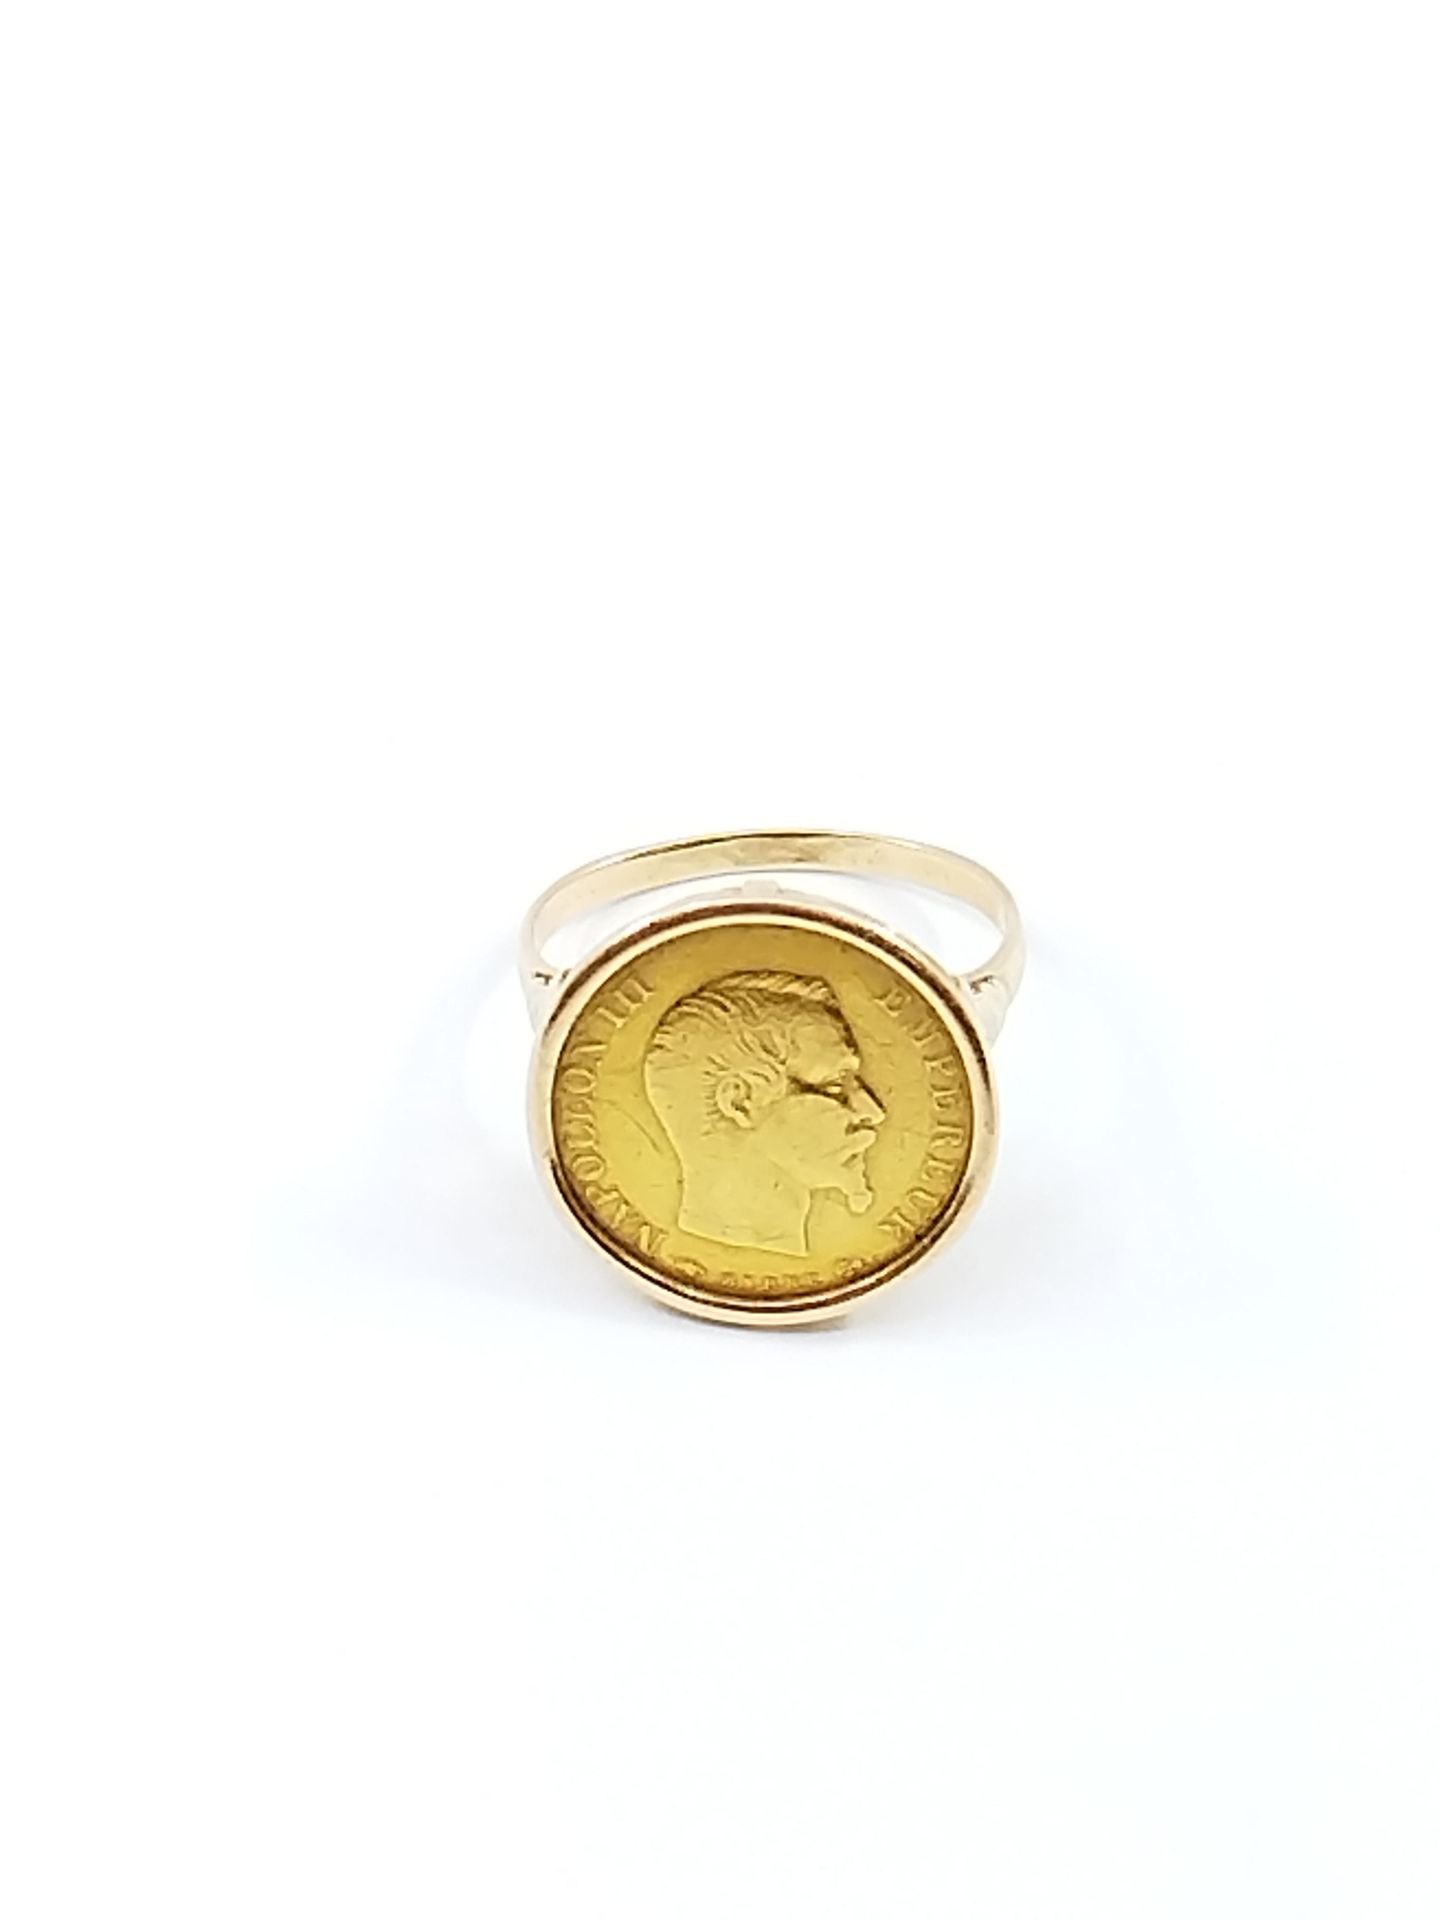 Null Lavoro francese

Anello in oro giallo 750° con moneta da 10 franchi 

peso:&hellip;